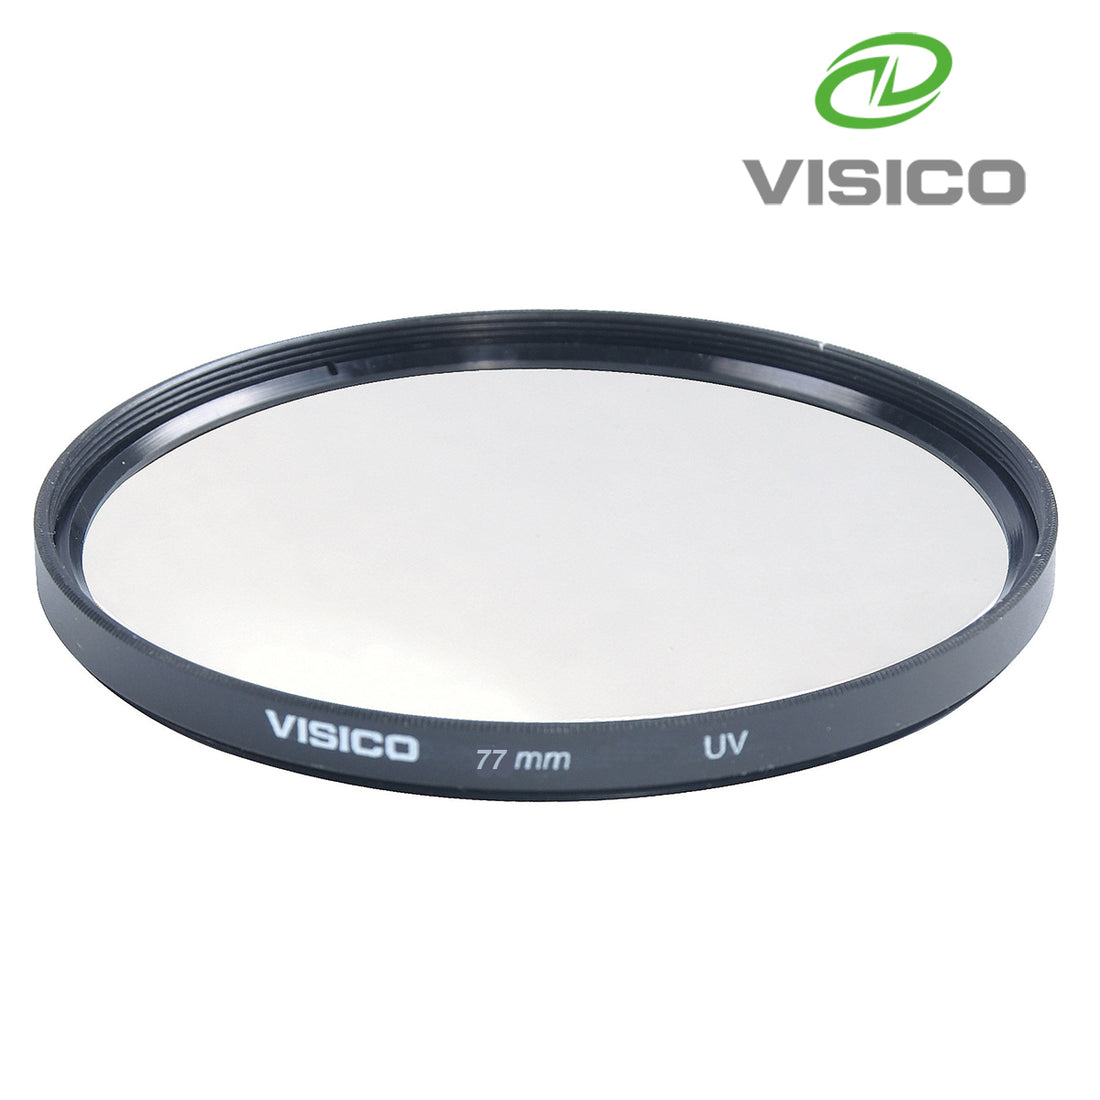 Visico 77mm Ultra Thin Multicoated HD Ultra Violet (UV) Filter VS77UV